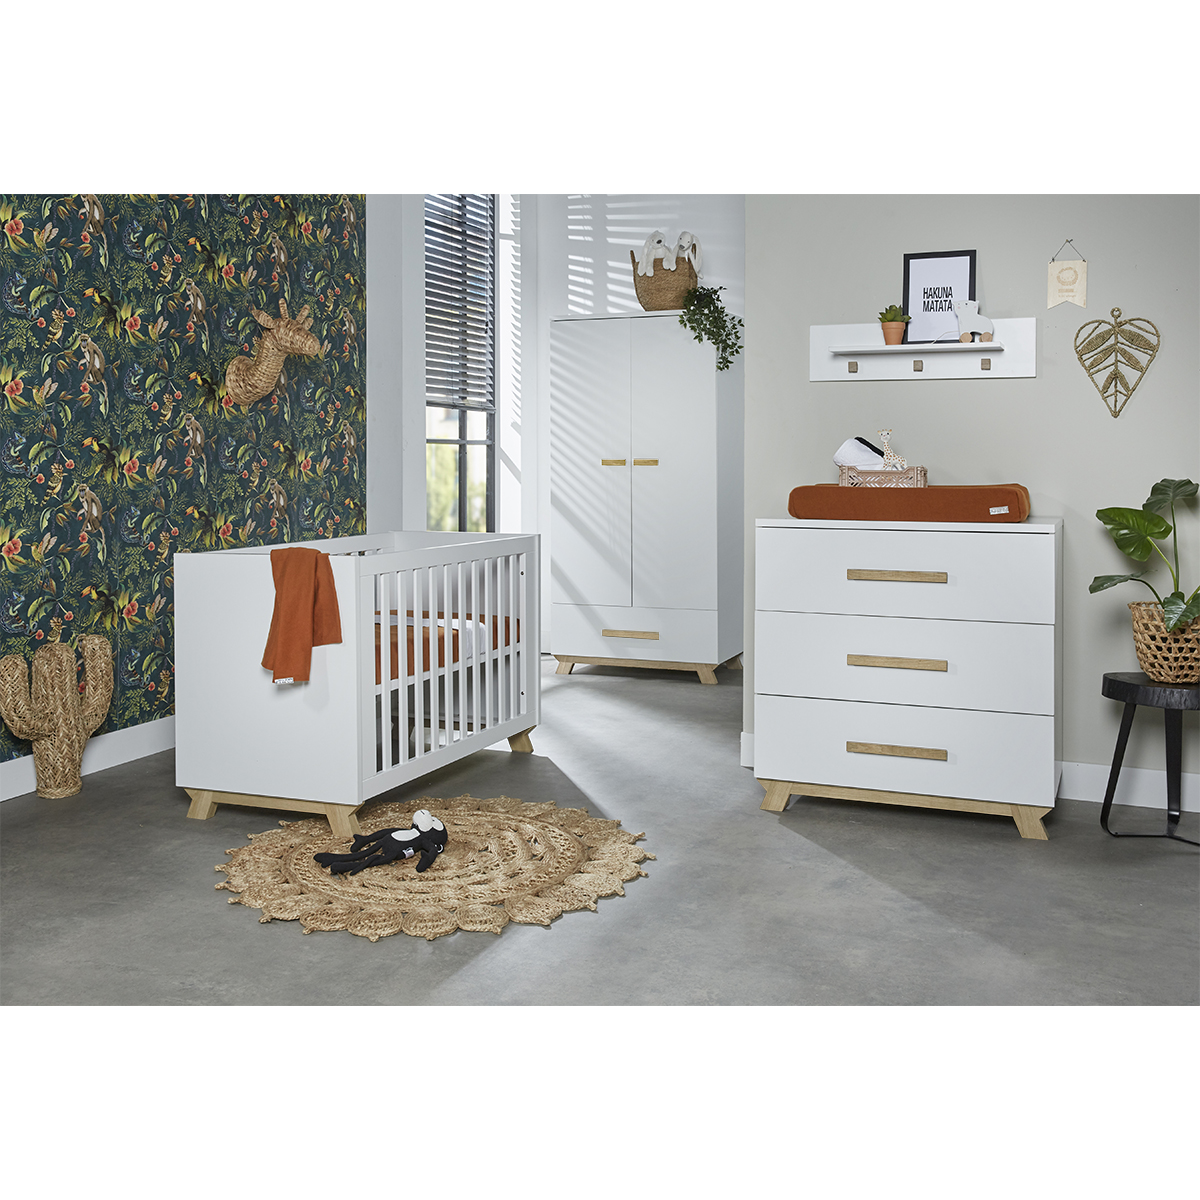 Chambre complète lit bébé 60x120, commode avec plan à langer et armoire Ikid Veneto - Blanc